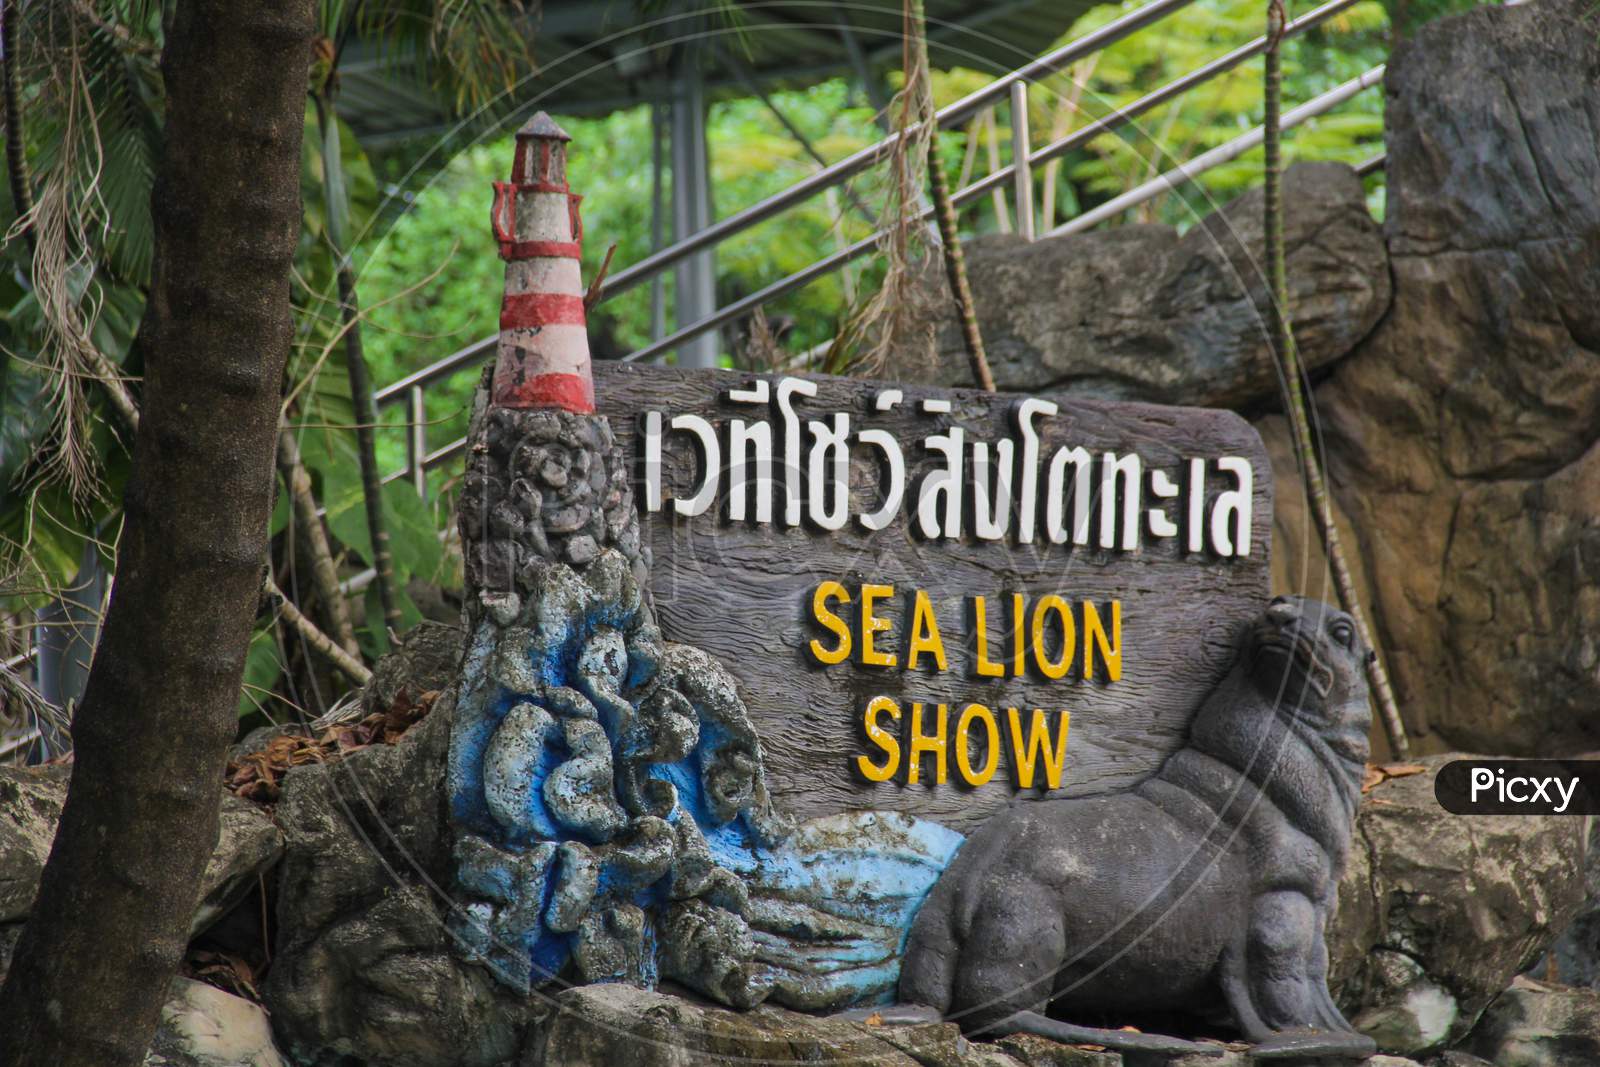 Safari World Park in Bangkok